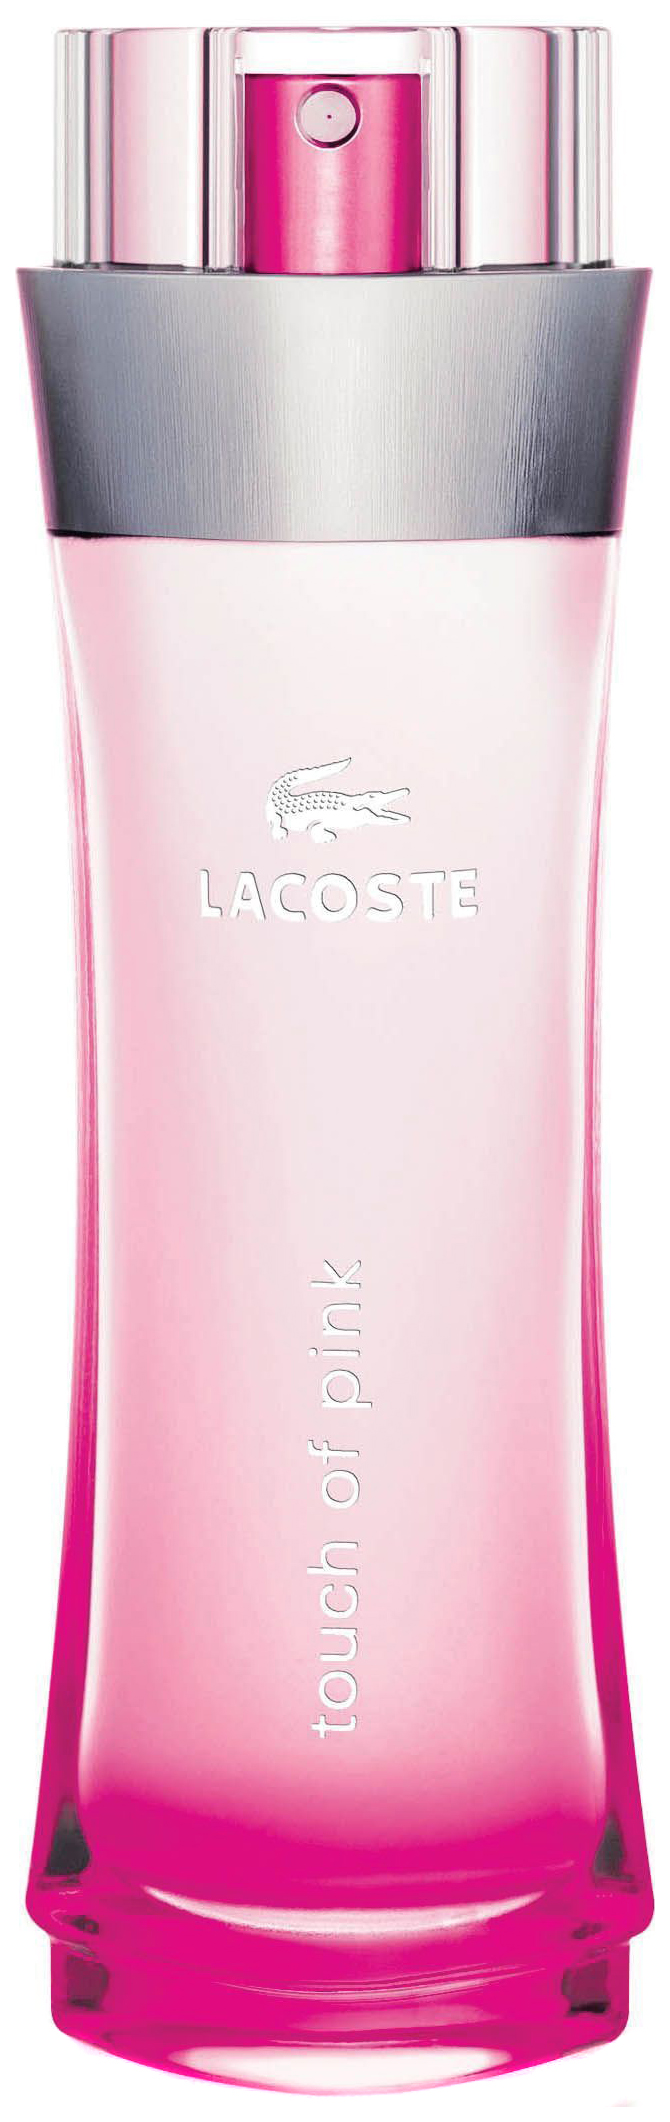 Туалетная вода Lacoste Touch Of Pink, 50 мл пояс верности красный pink rabbit с замочком one size